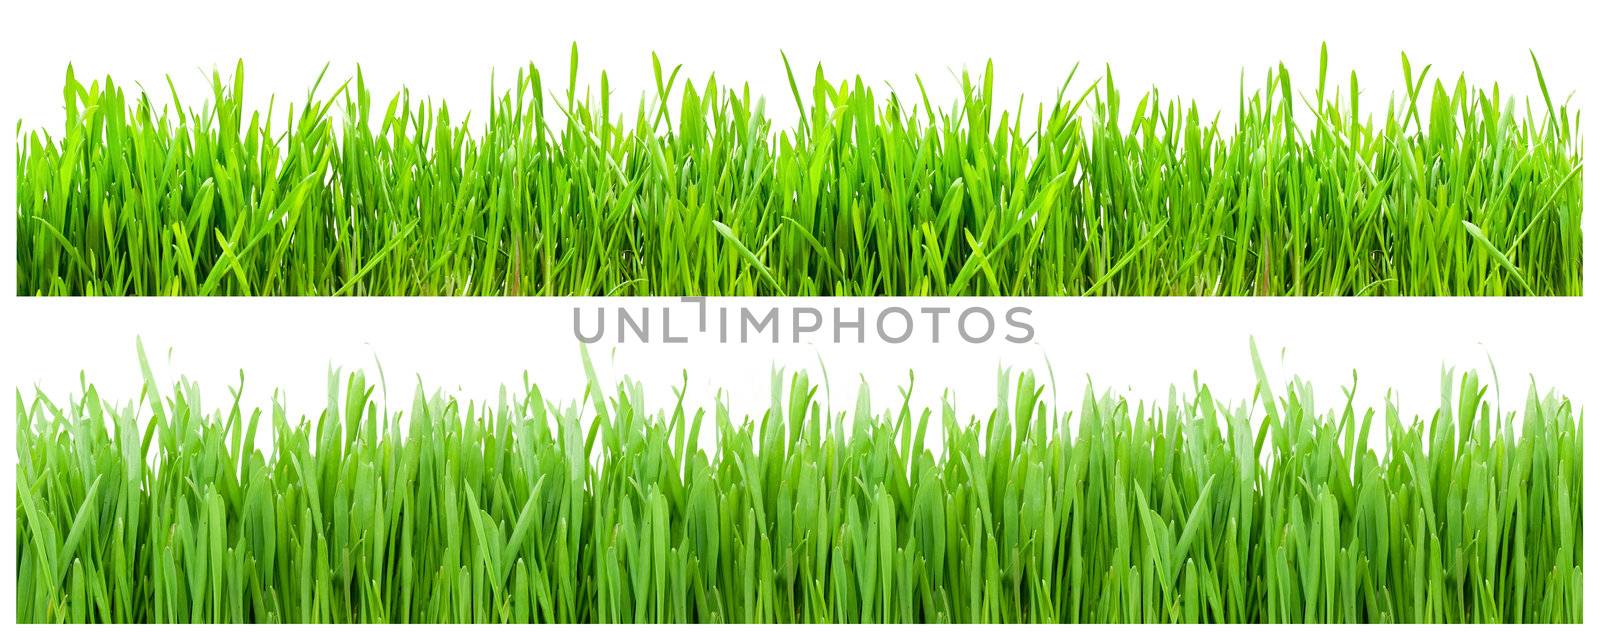 Green Grass by sailorr